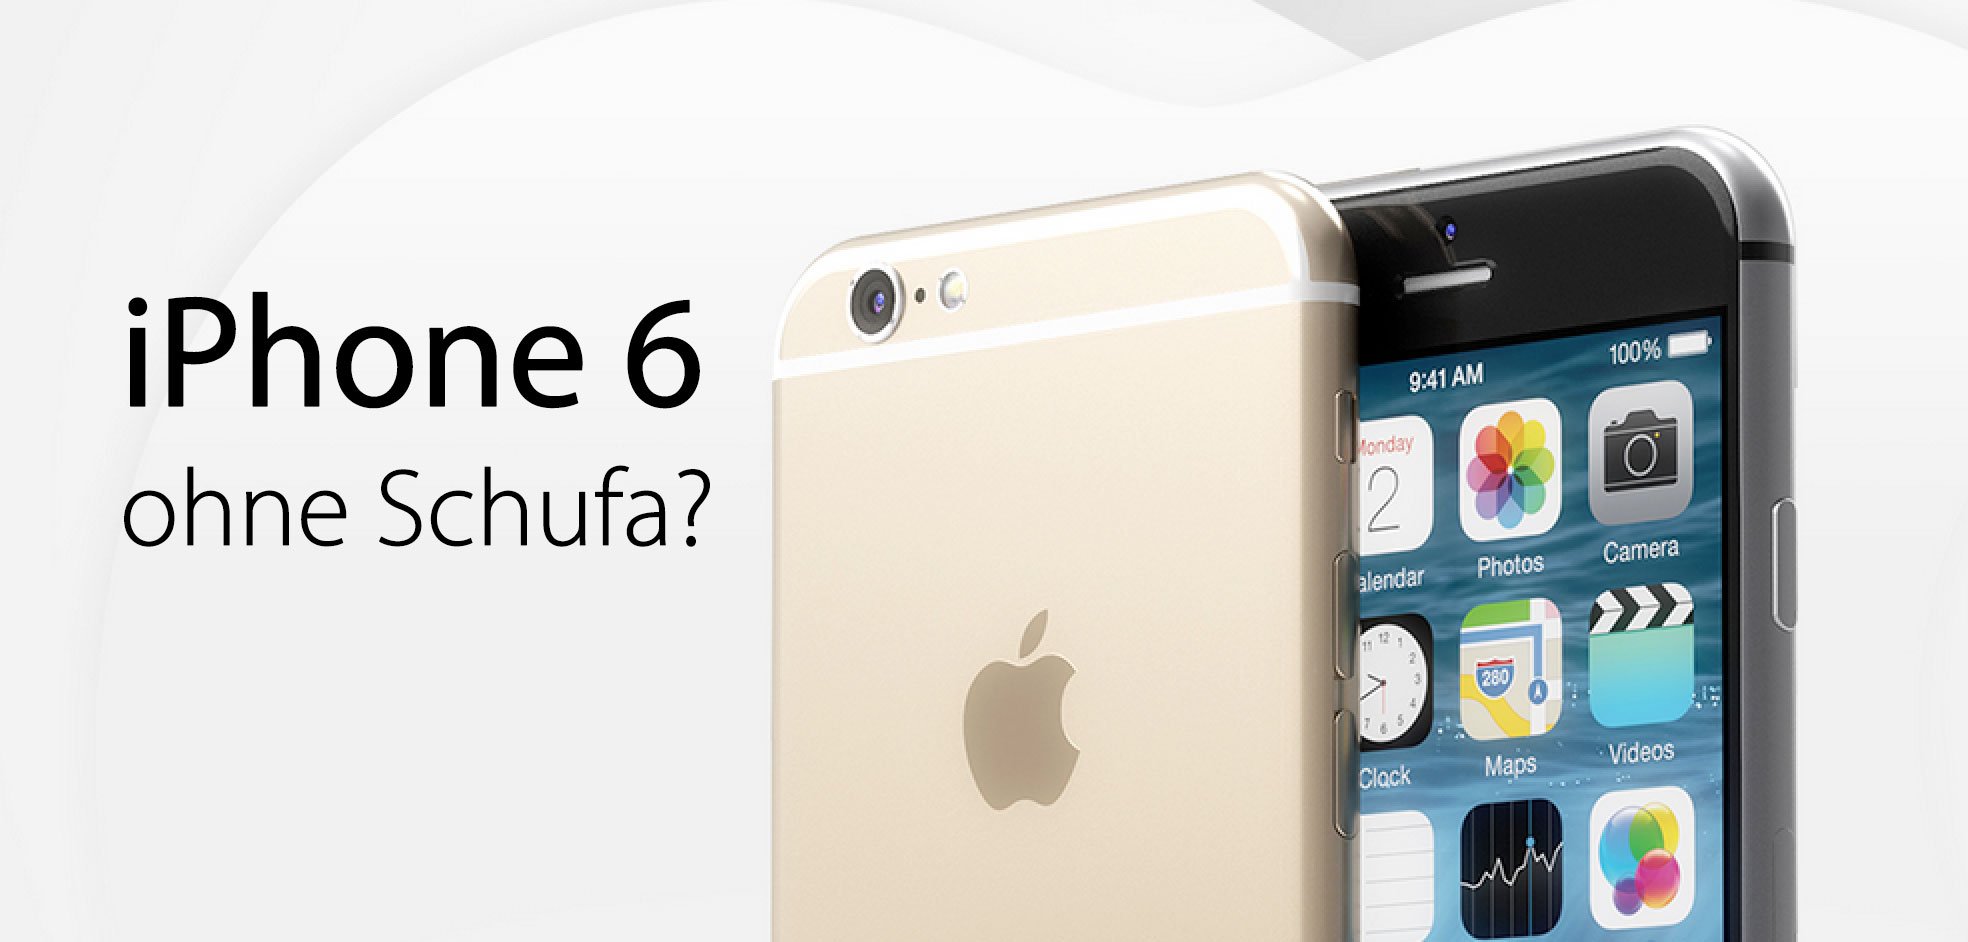 iPhone 6 ohne Schufa: Vertrag mit Apple iPhone 6 trotz Schufa-Eintrag? 1